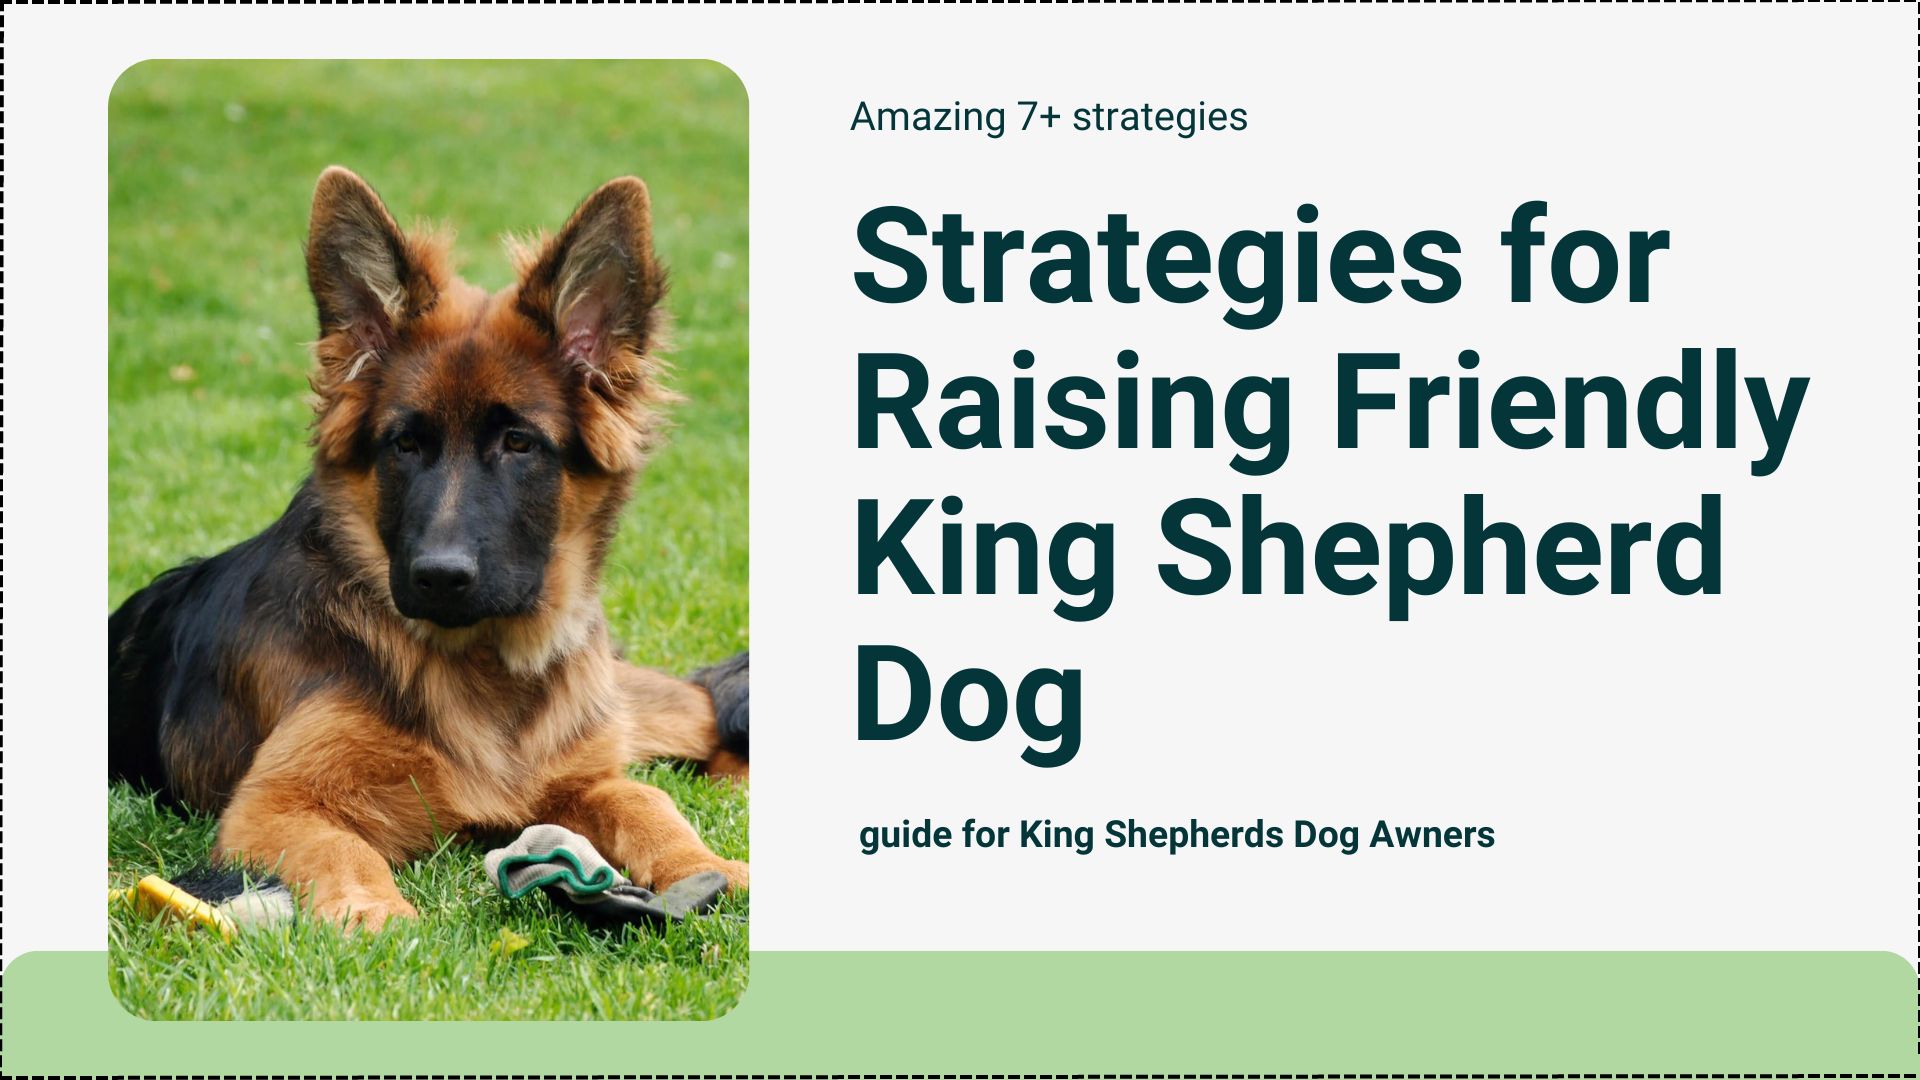 King Shepherd Dog